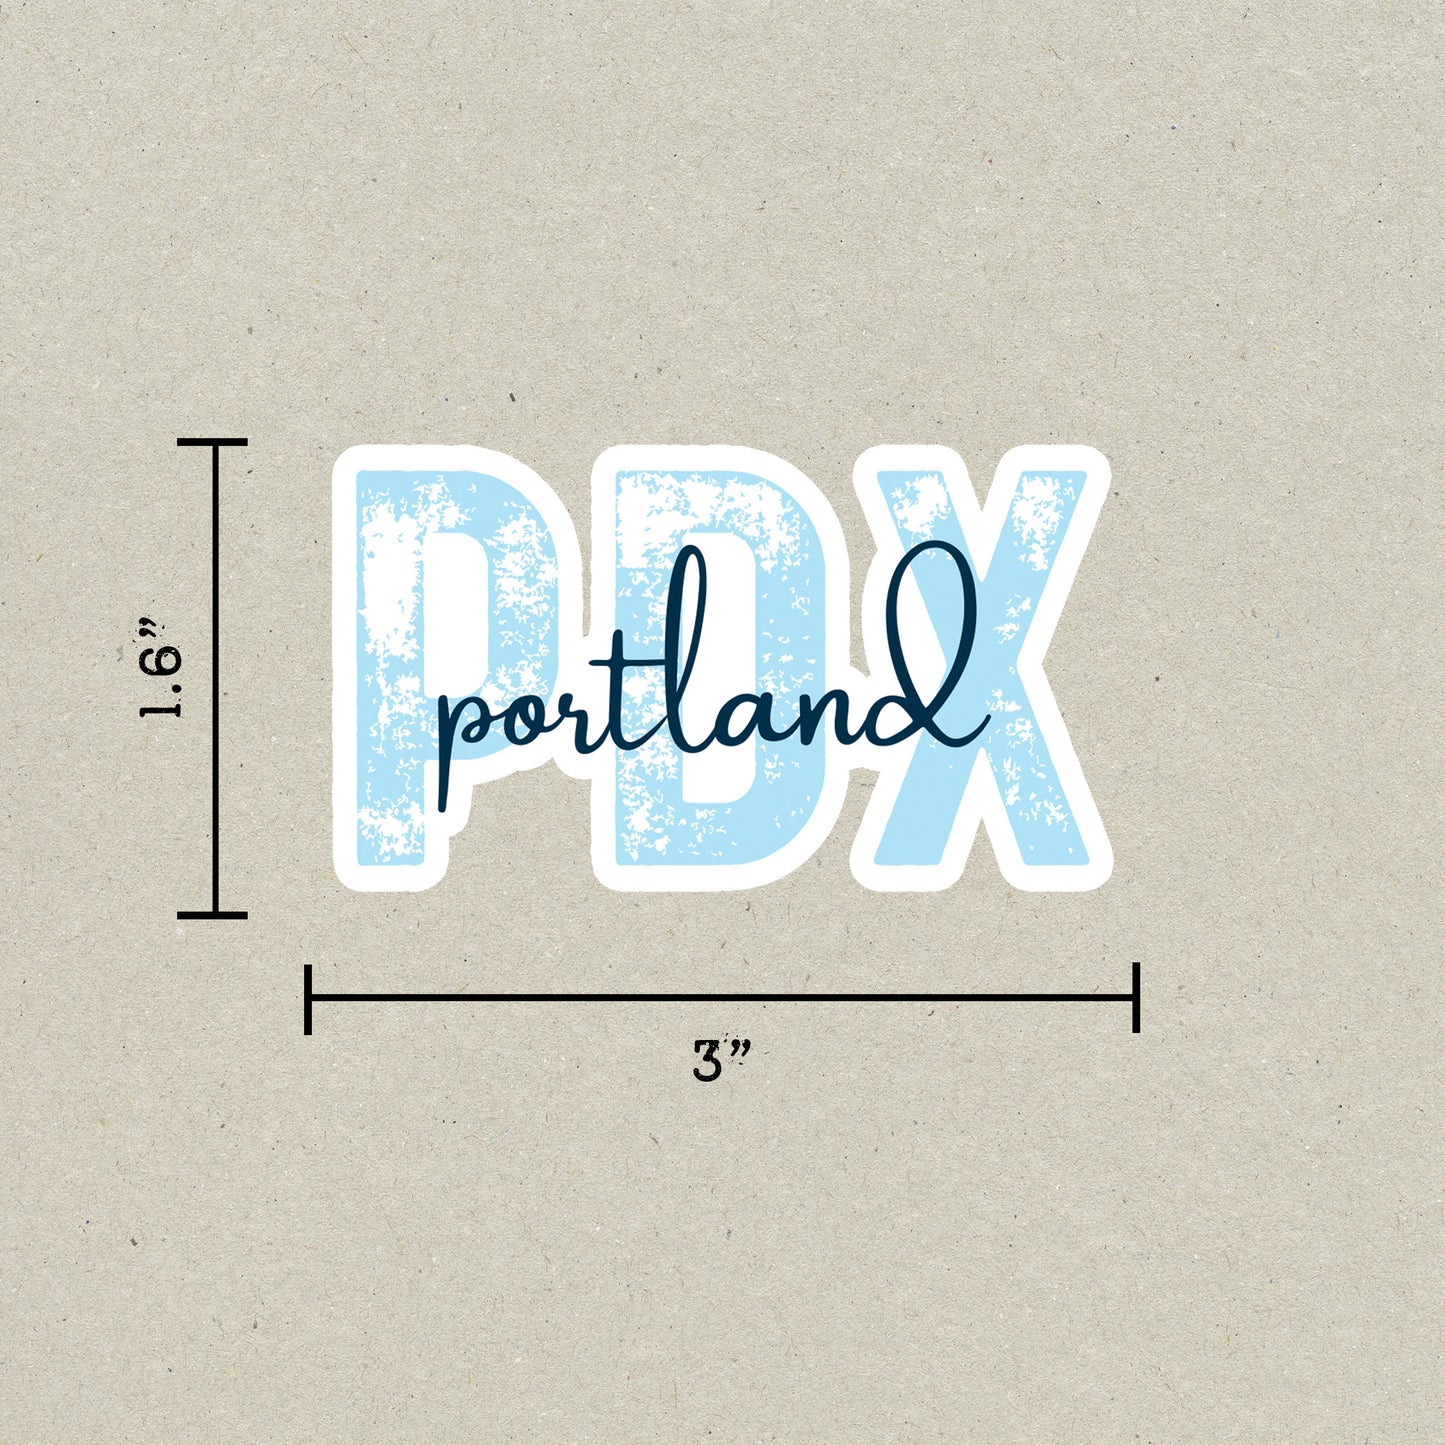 PDX Portland Airport Code Sticker